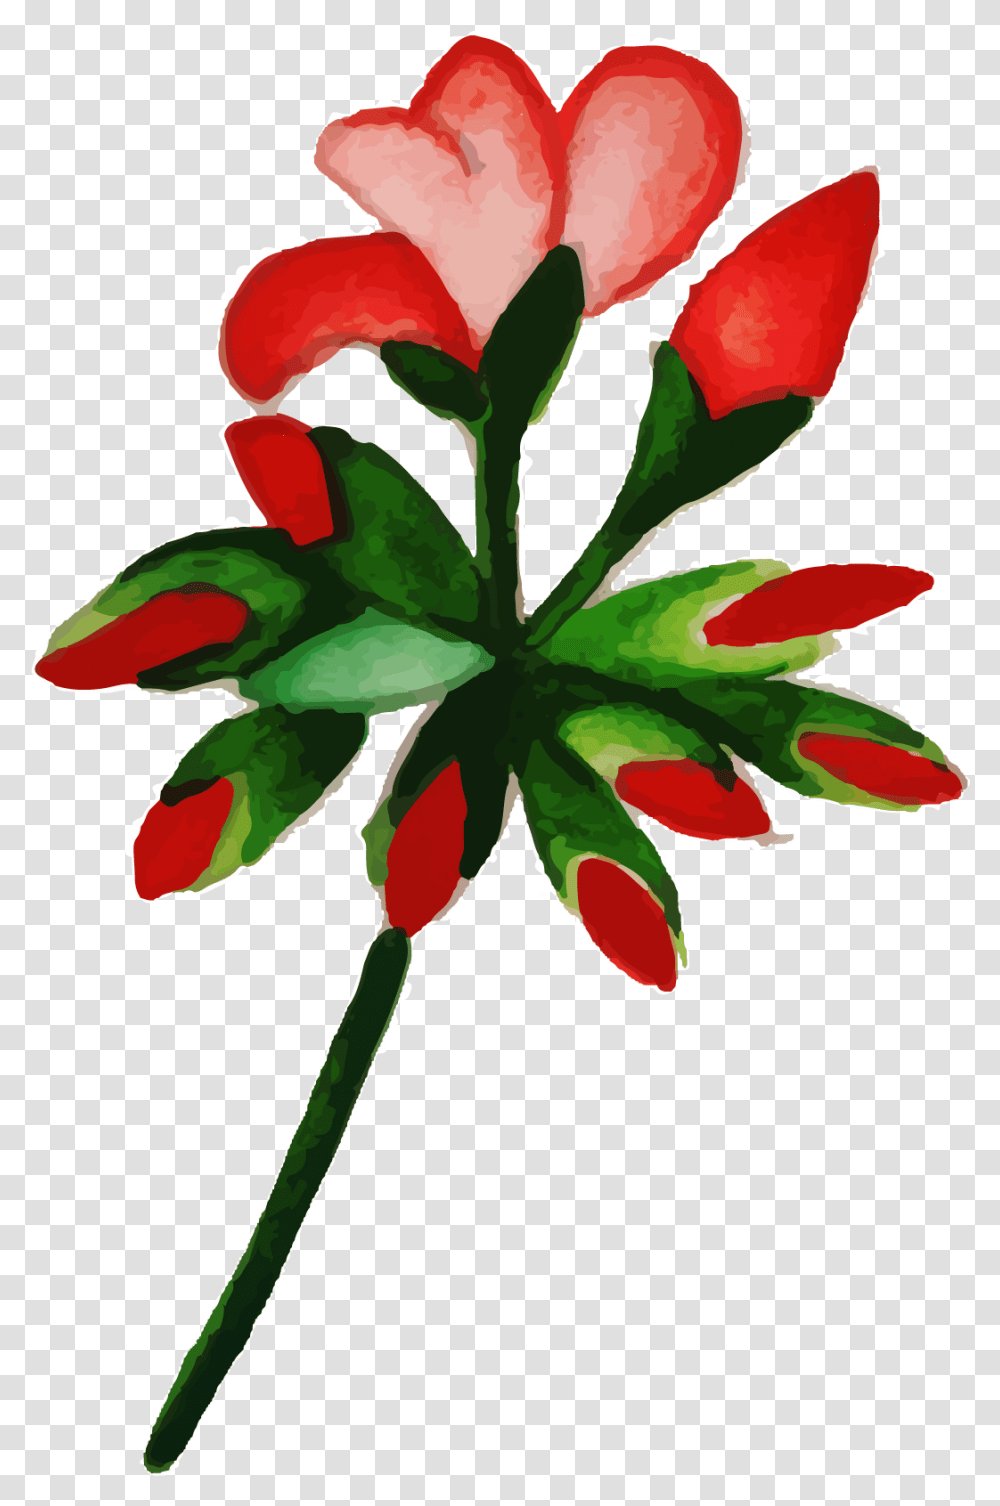 Free Watercolor Floral Konfest, Leaf, Plant, Geranium, Flower Transparent Png